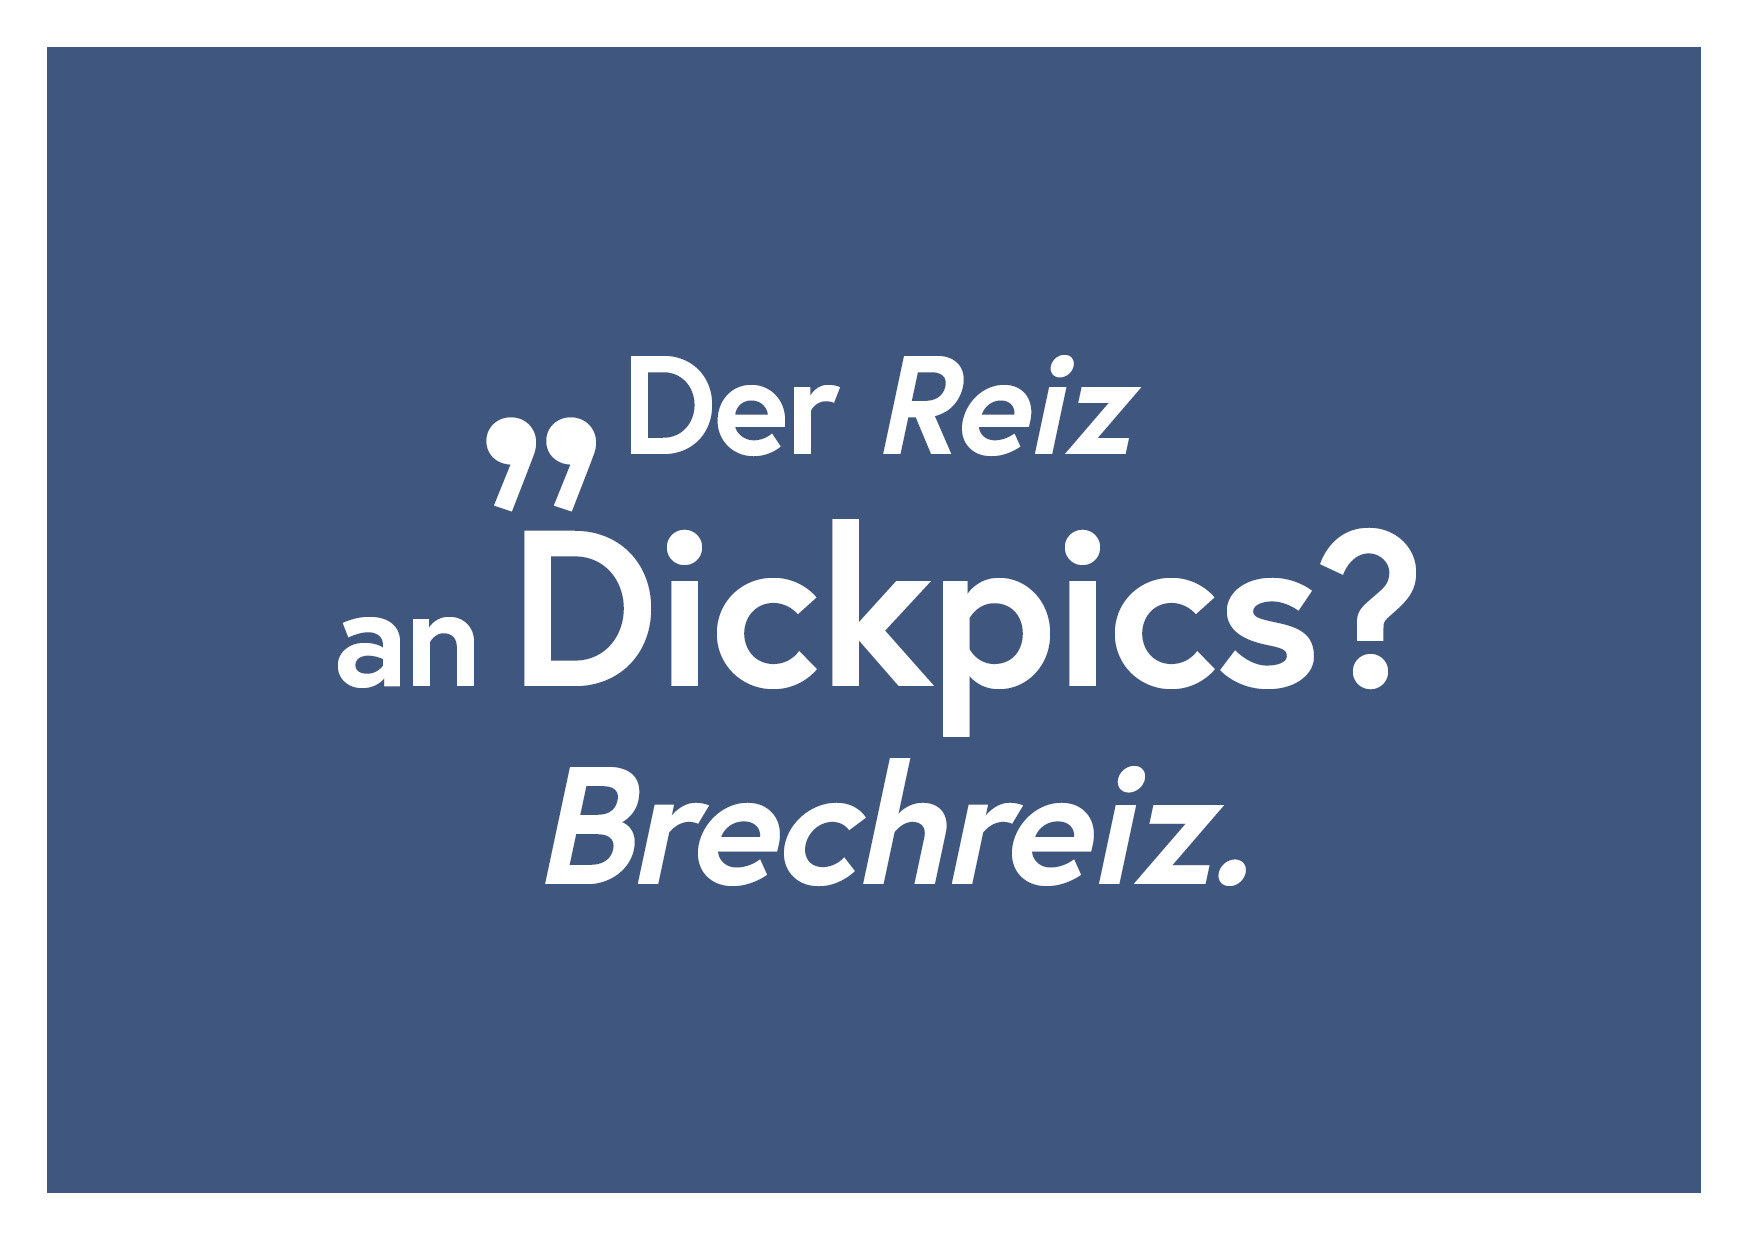 Freecard "Der Reiz an Dickpics? Brechreiz."